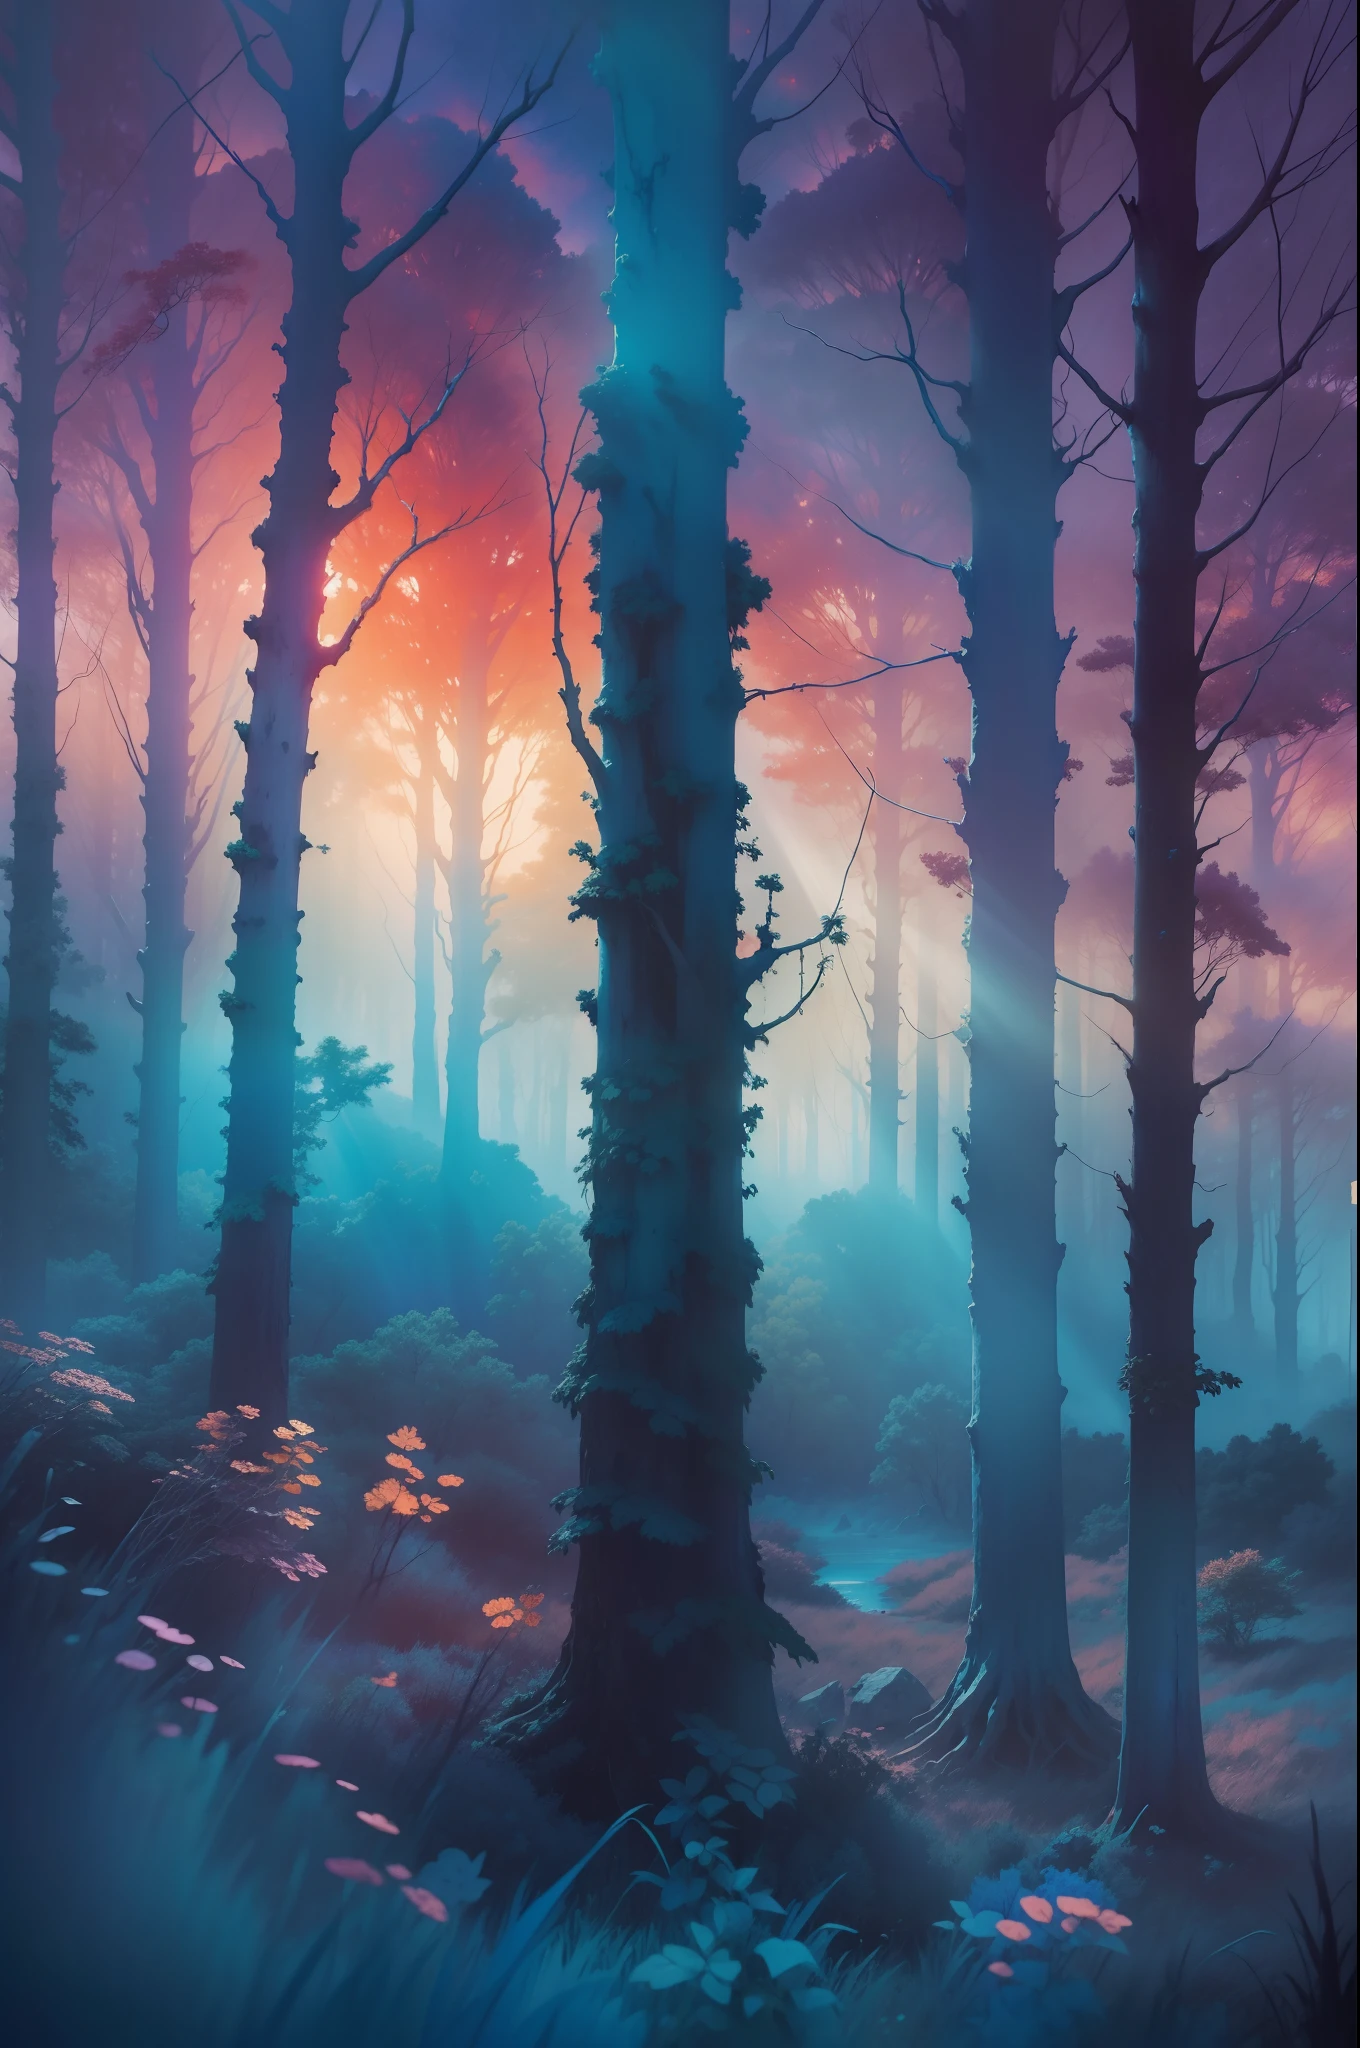 синий закат, божественные лучи ,лес,Высокодетализированные цвета, акварель, абстрактная картина Бексински, часть Адриана Гени и Герхарда Рихтера, шедевр,8к высокое разрешение, Ultra Render Cinematic